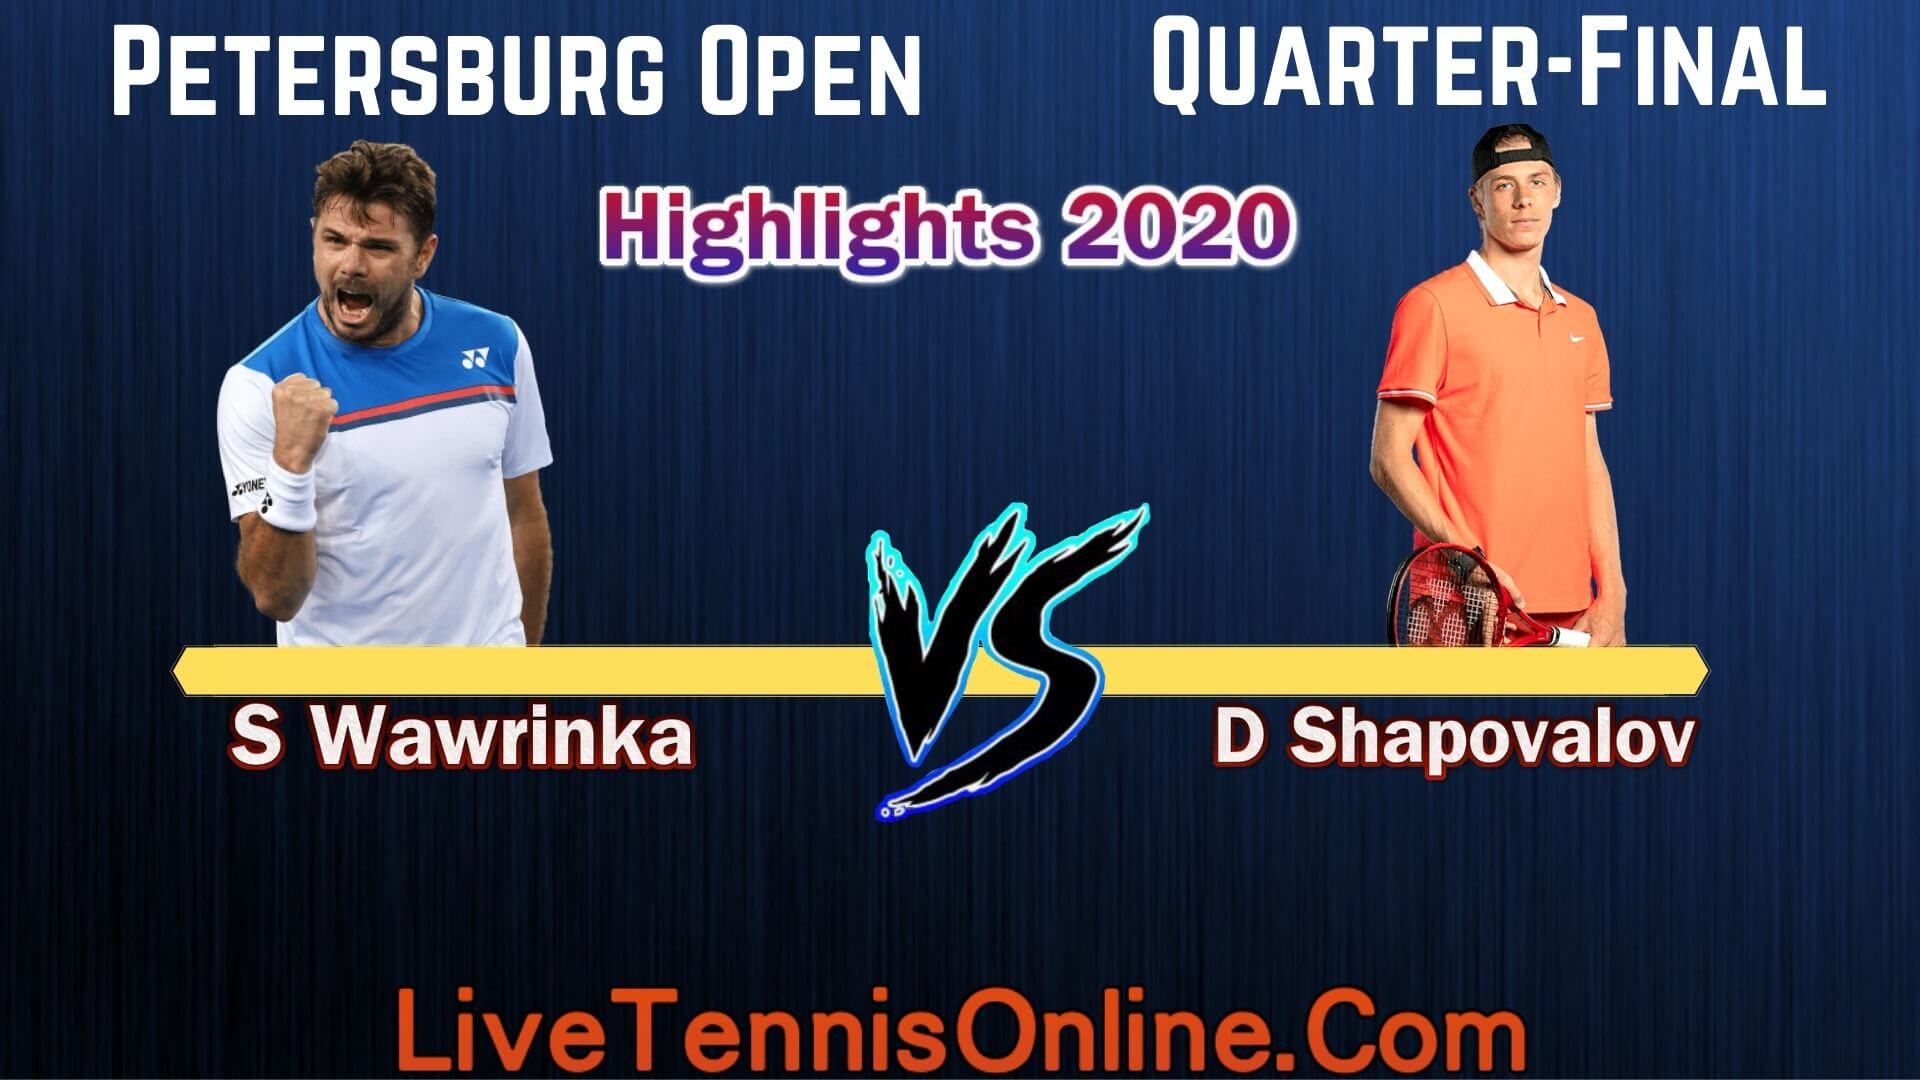 S Wawrinka Vs D Shapovalov Quarter Final Highlights 2020  Petersburg Open